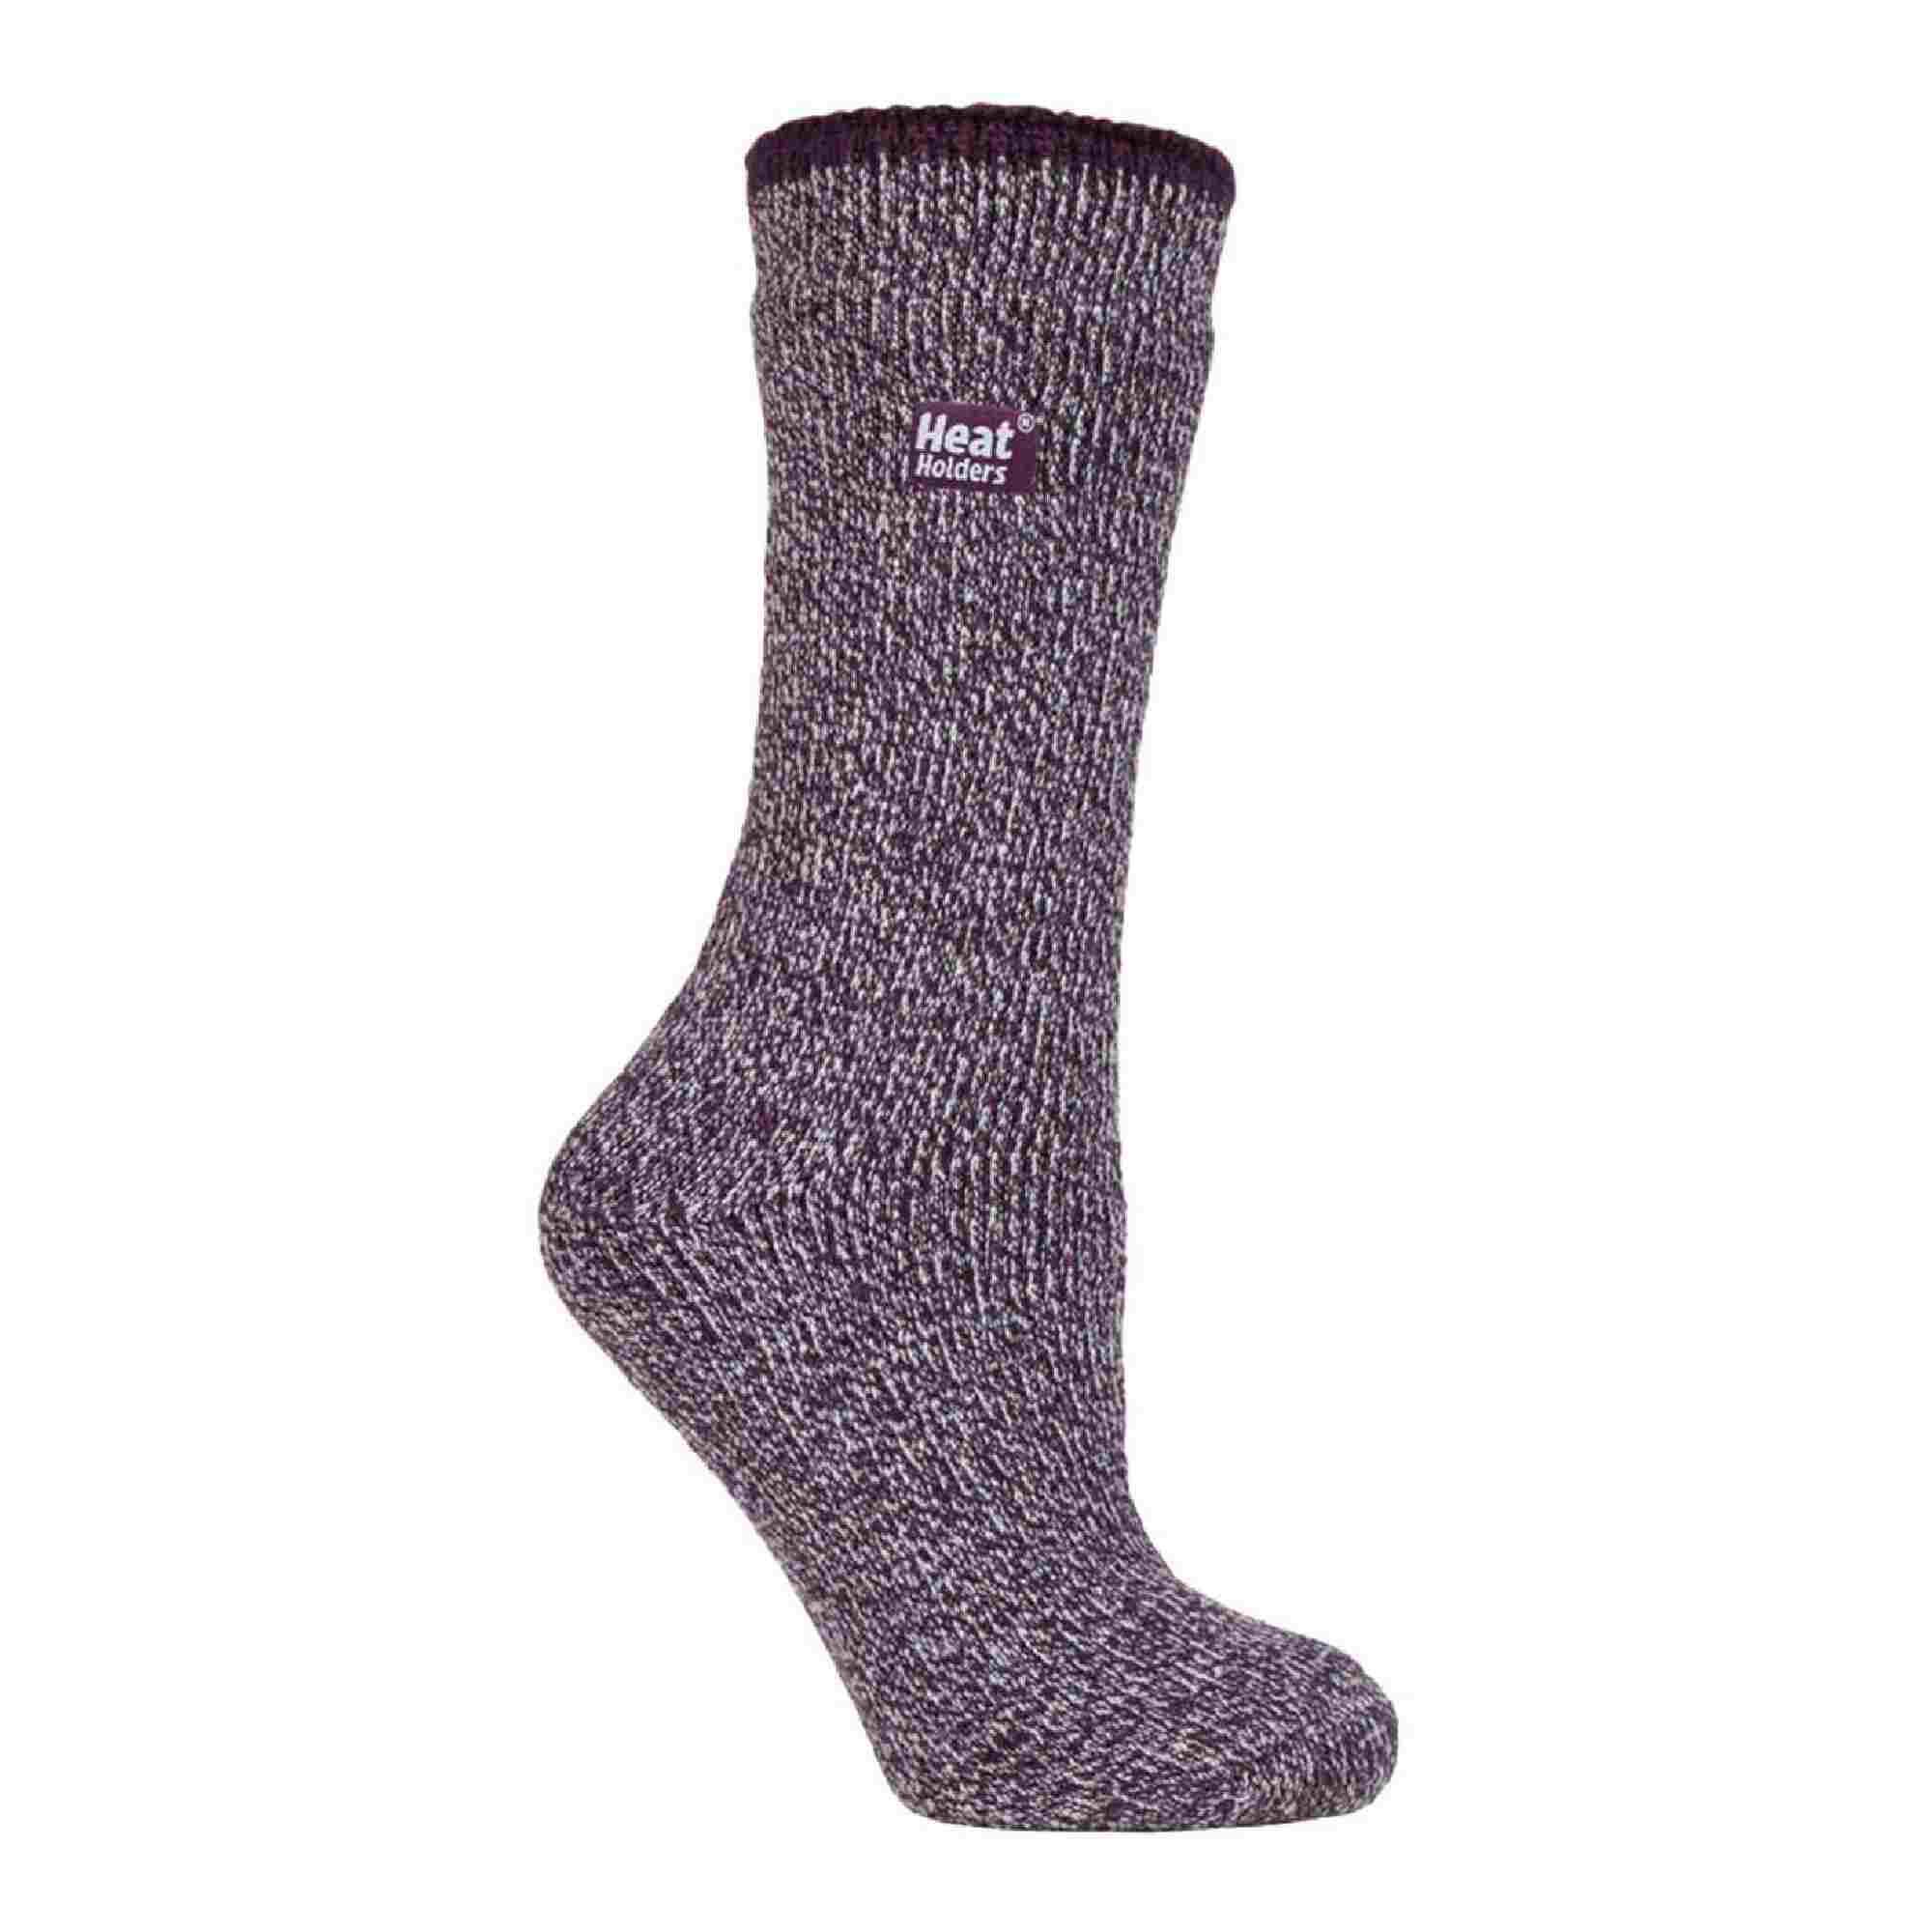 Ladies Outdoor Merino Wool Knee High Long Thermal Socks for Winter 1/7